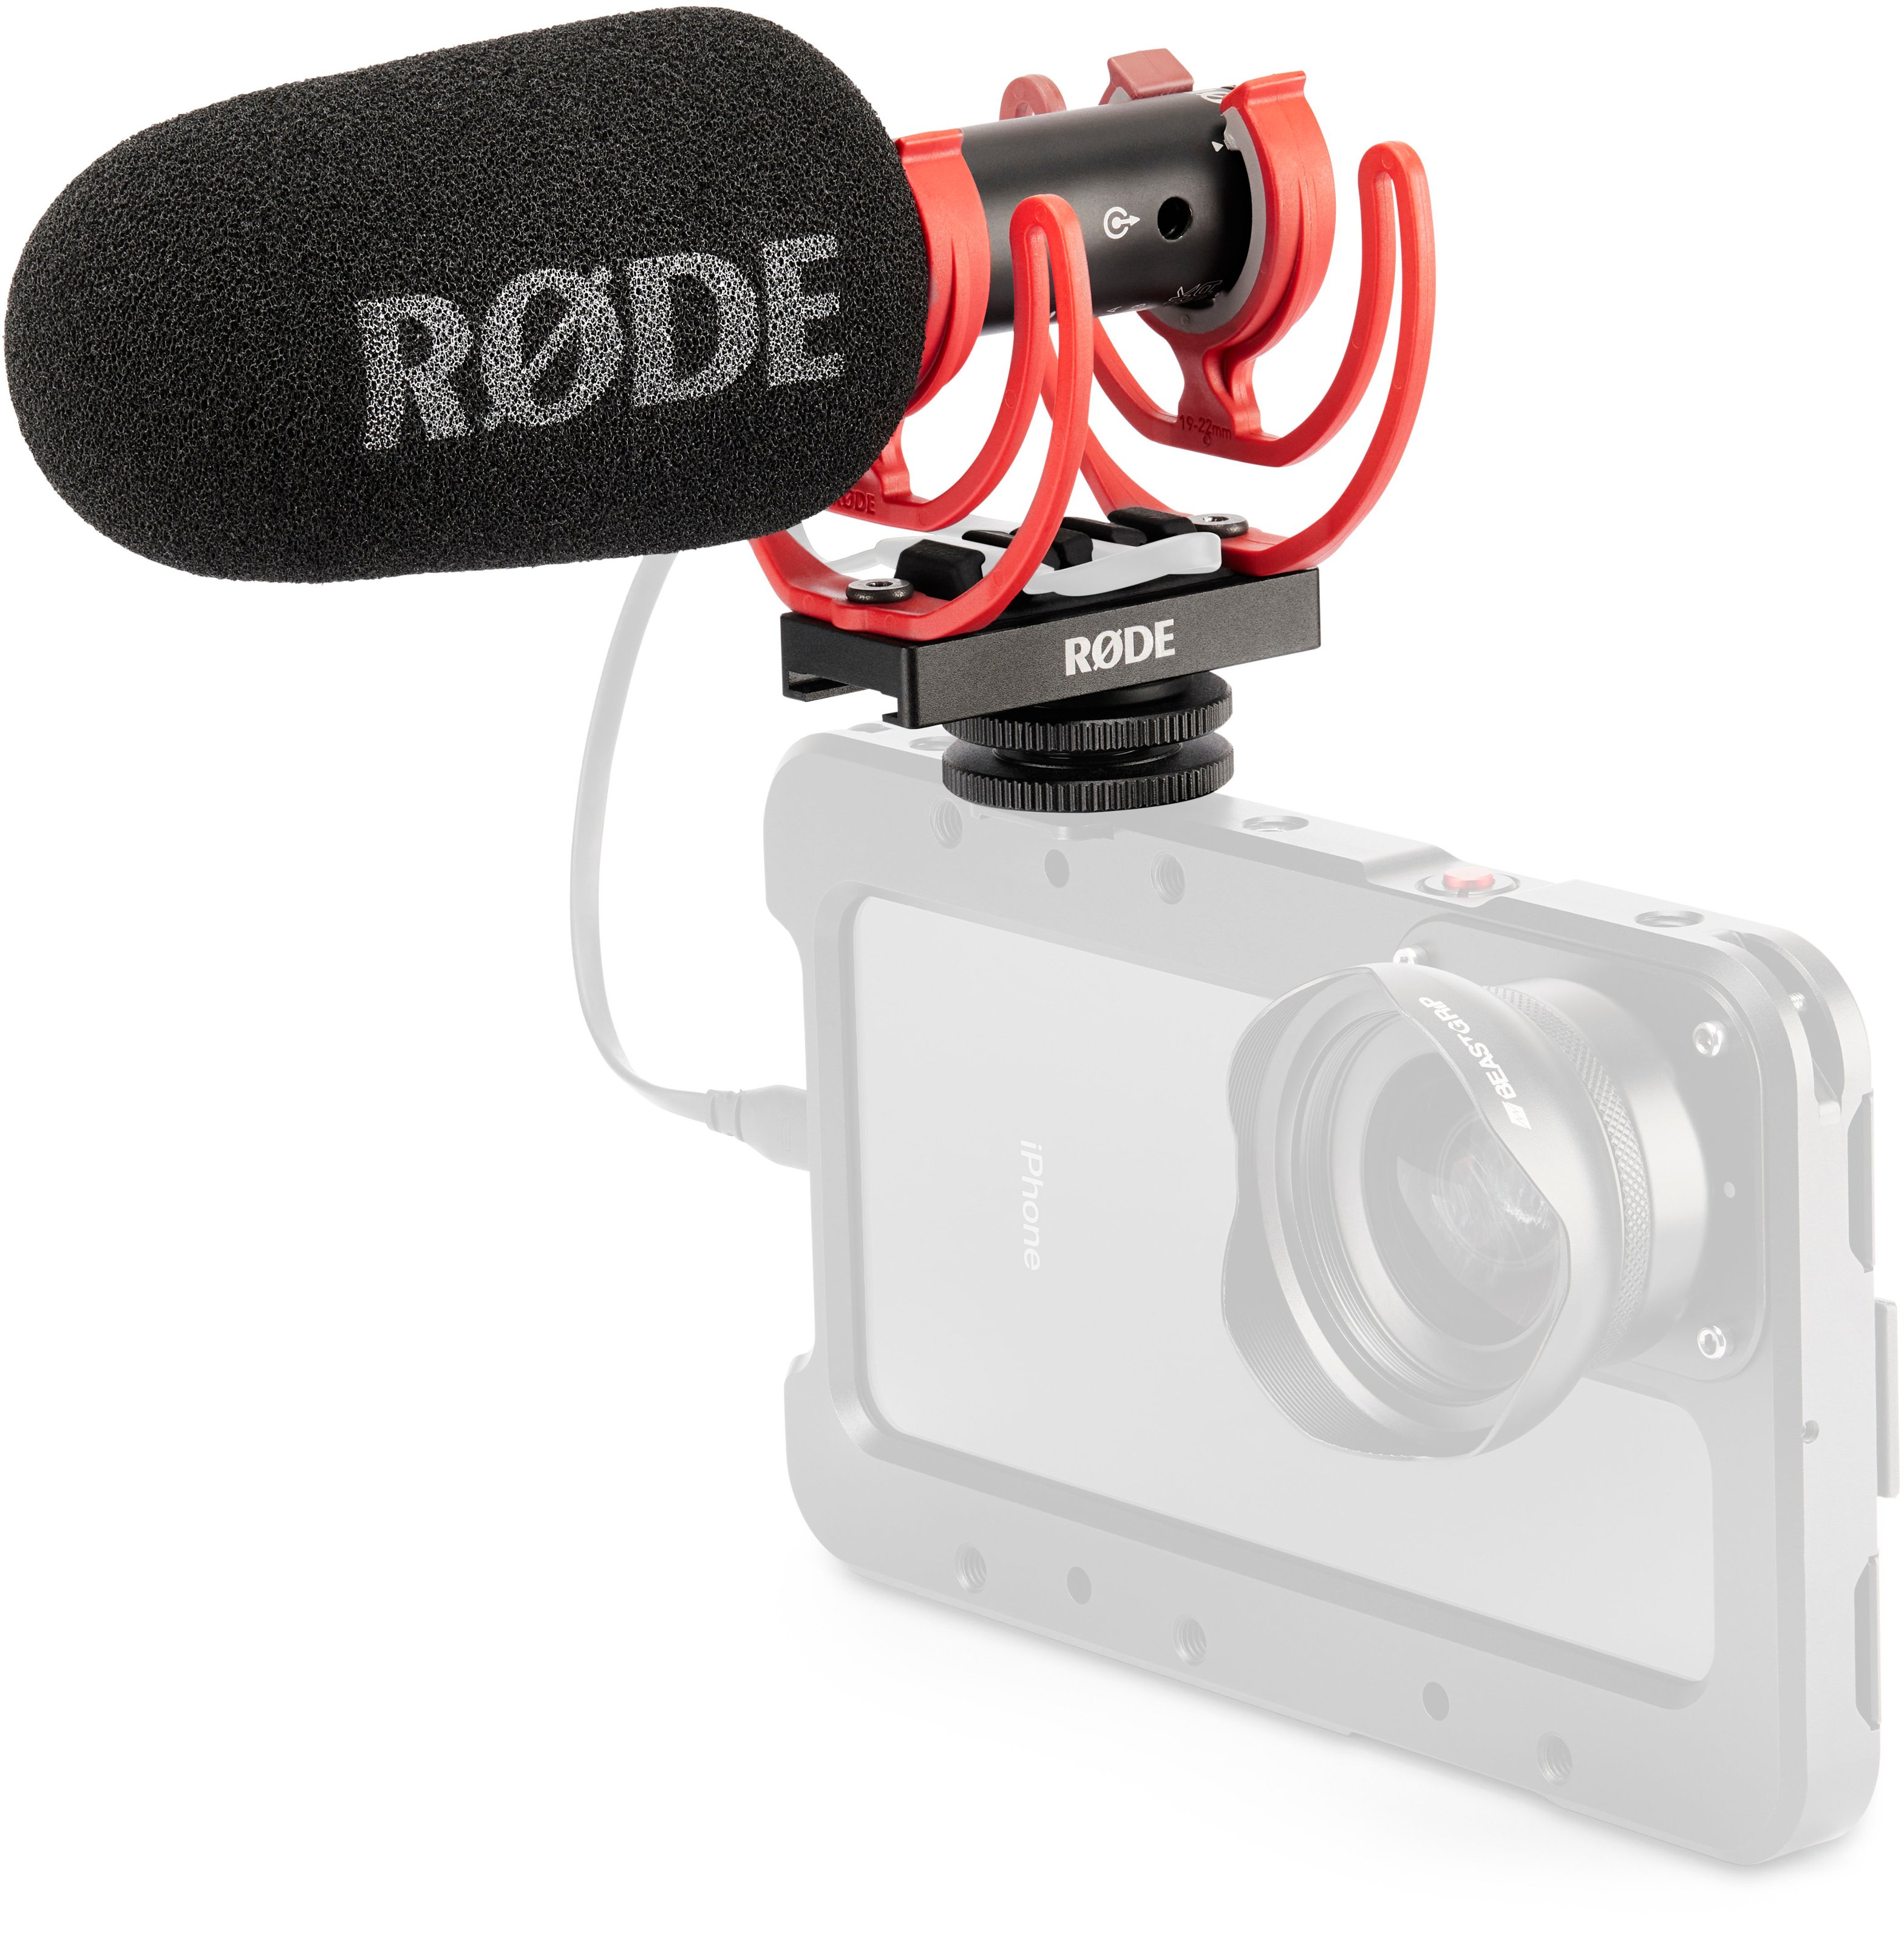 RODE VideoMic GO II On-Camera Microphone